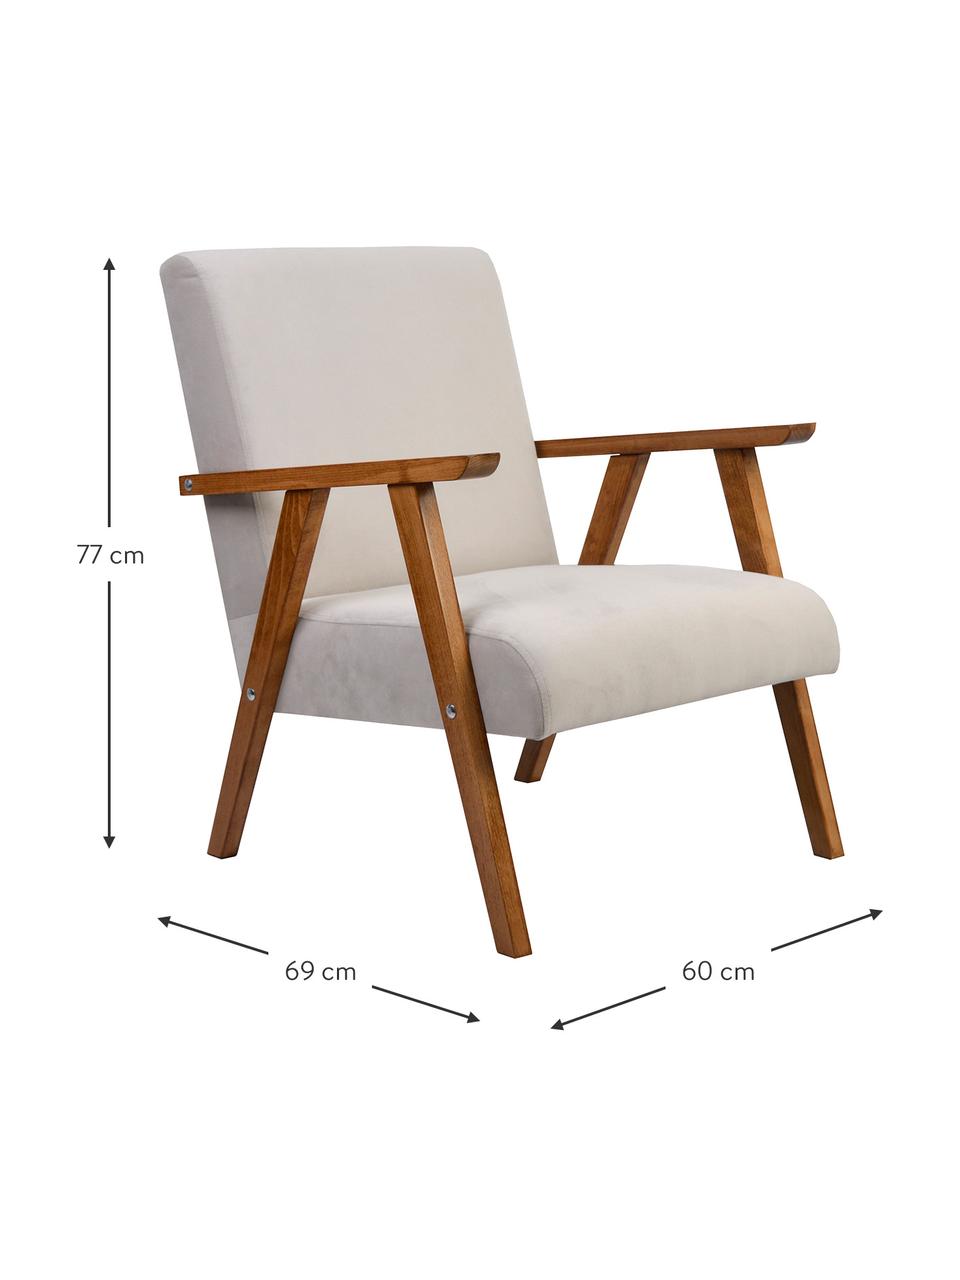 Fotel z aksamitu Victoria, Tapicerka: aksamit (100% poliester), Stelaż: drewno naturalne, Beżowy aksamit, drewno naturalne lakierowane, S 60 x G 69 cm